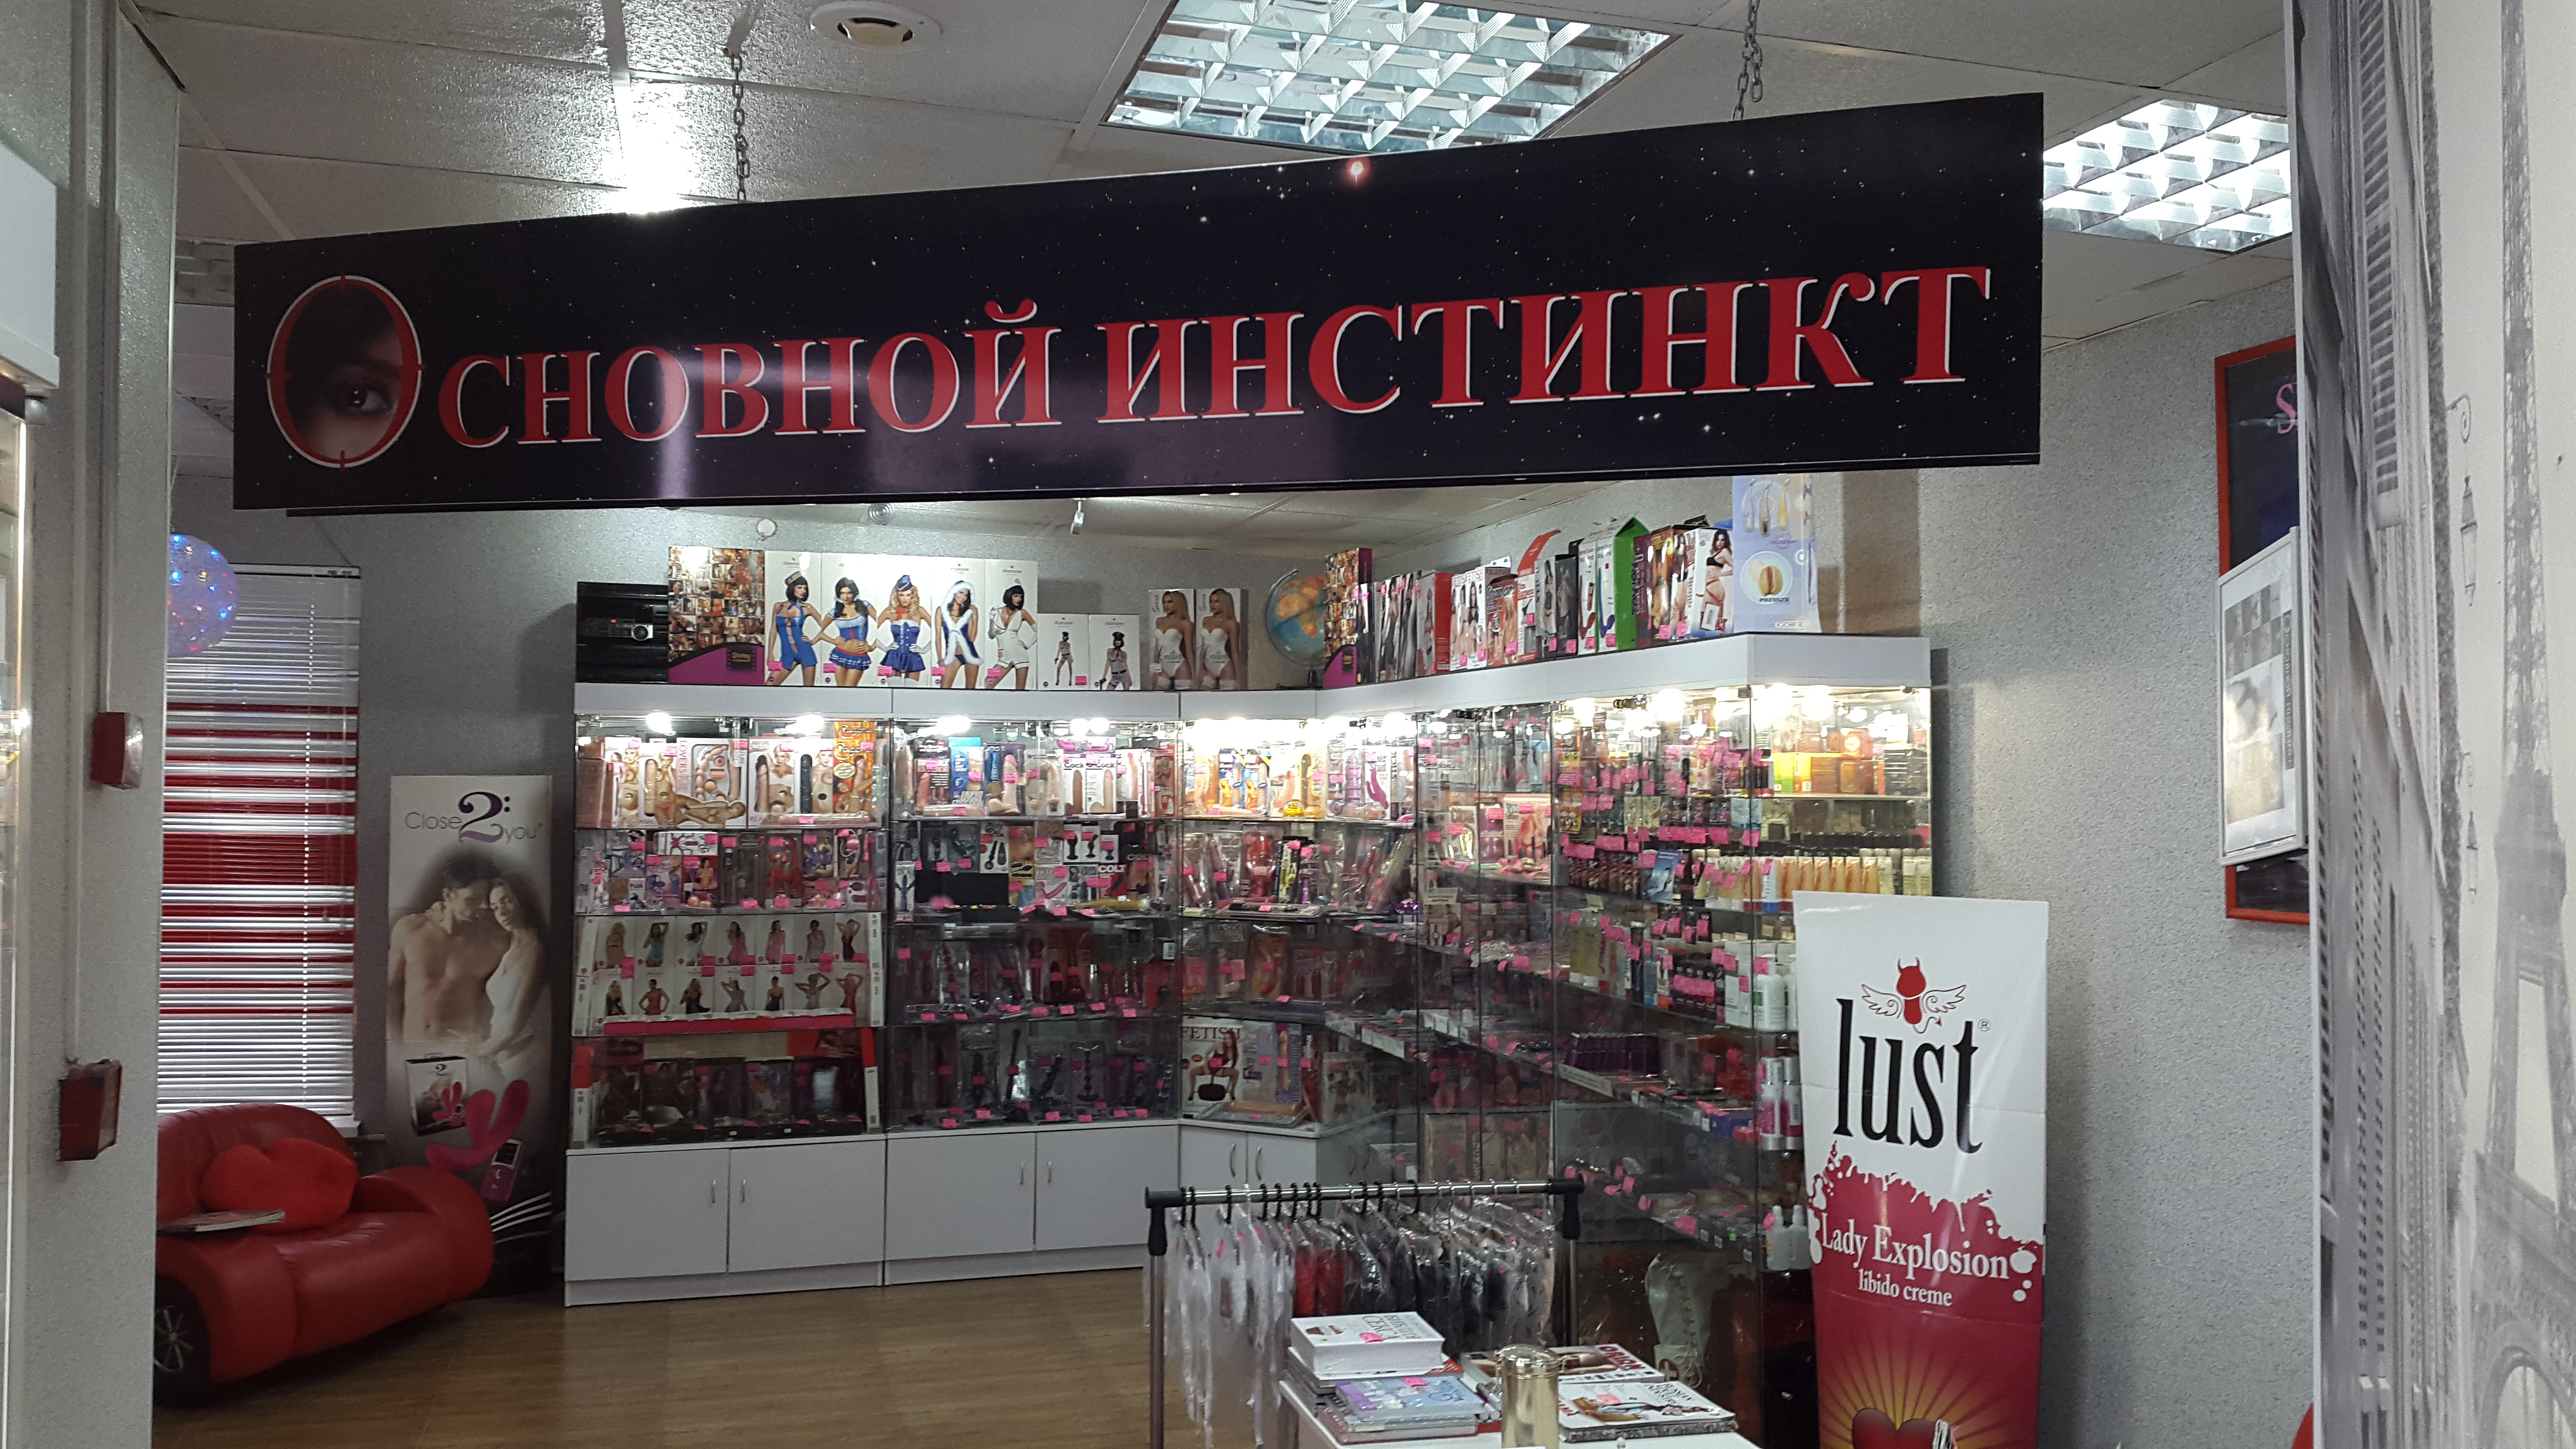 Магазин Секс Шоп В Харькове